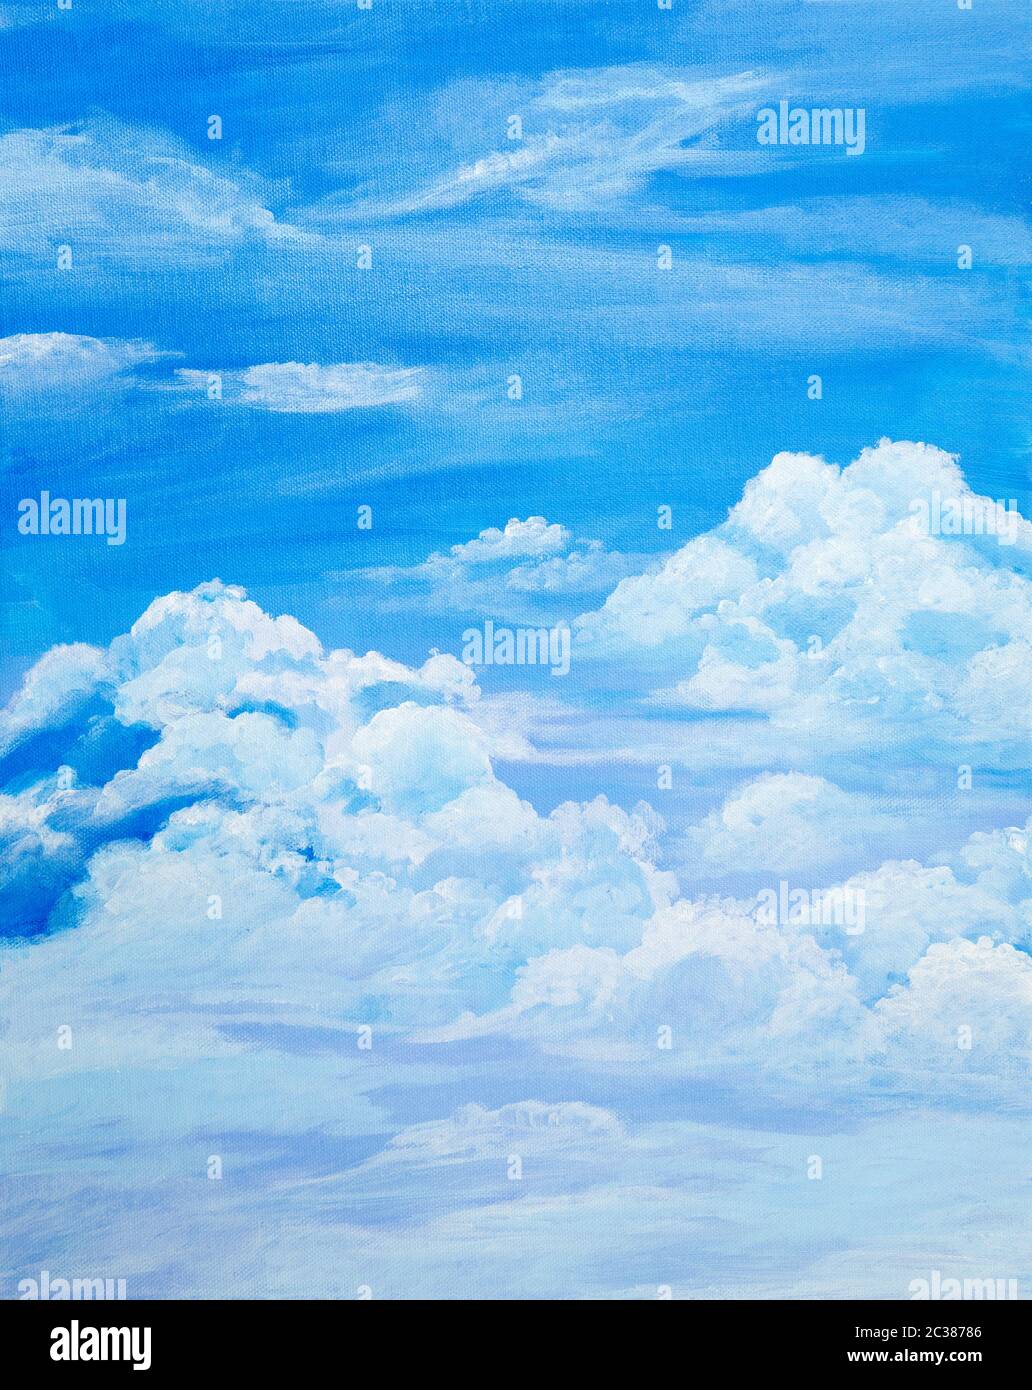 Peinture acrylique originale de ciel nuageux sur toile.Impressionnisme moderne, modernisme, marinisme Banque D'Images